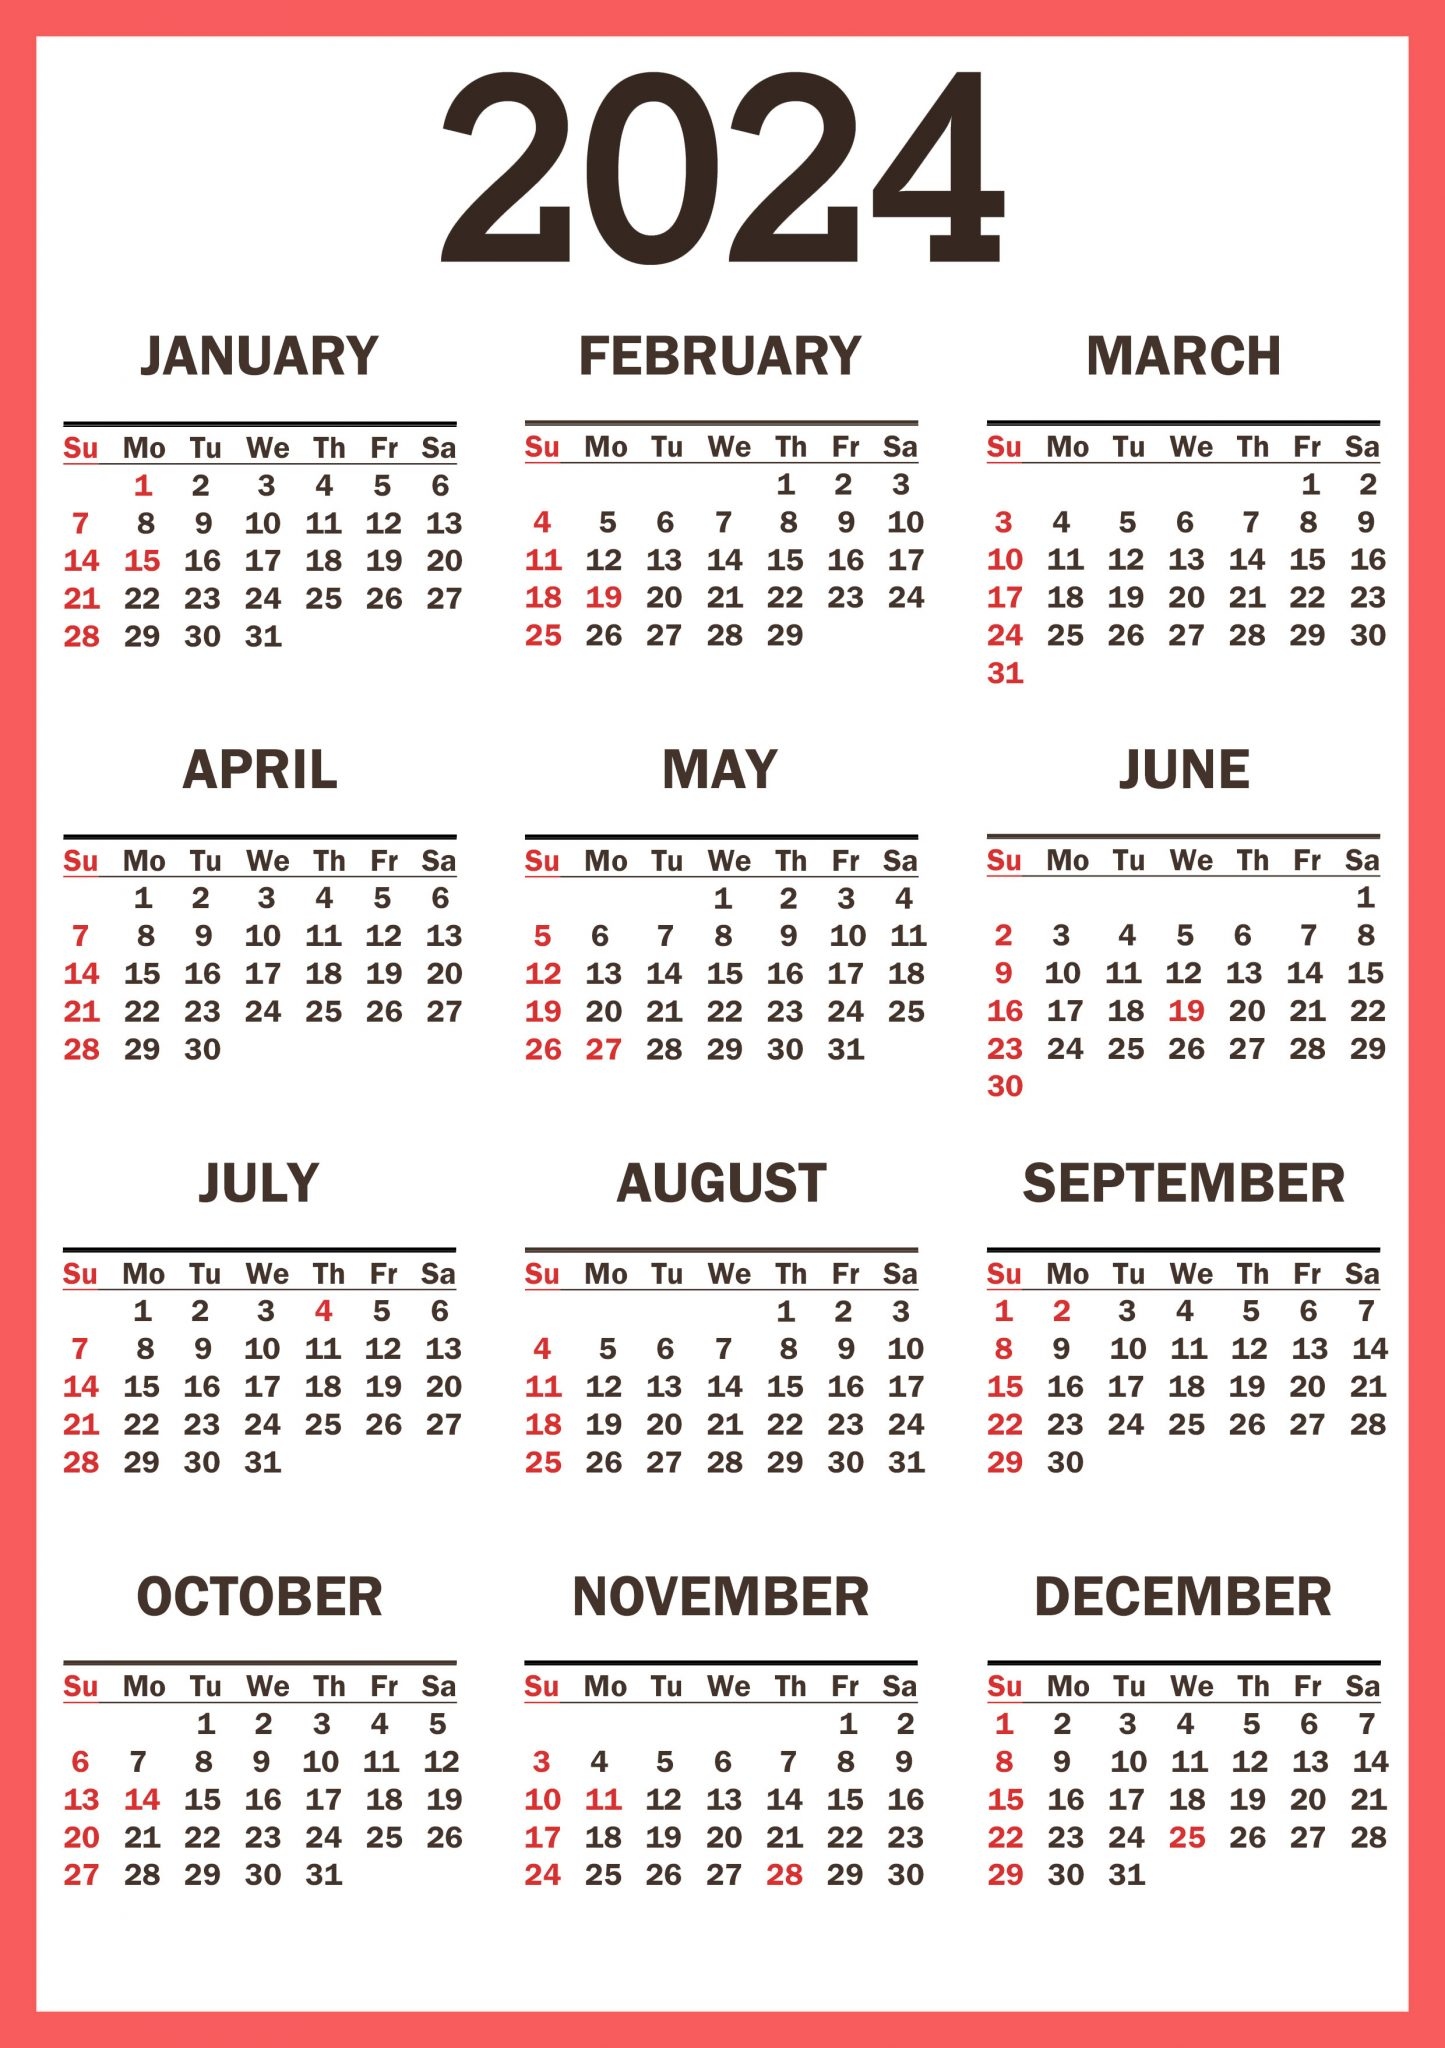 2024 Calendar With Holidays Printable And Free Download Pretty Designs - Free Printable 2024 Calendar With Holidays Kenya